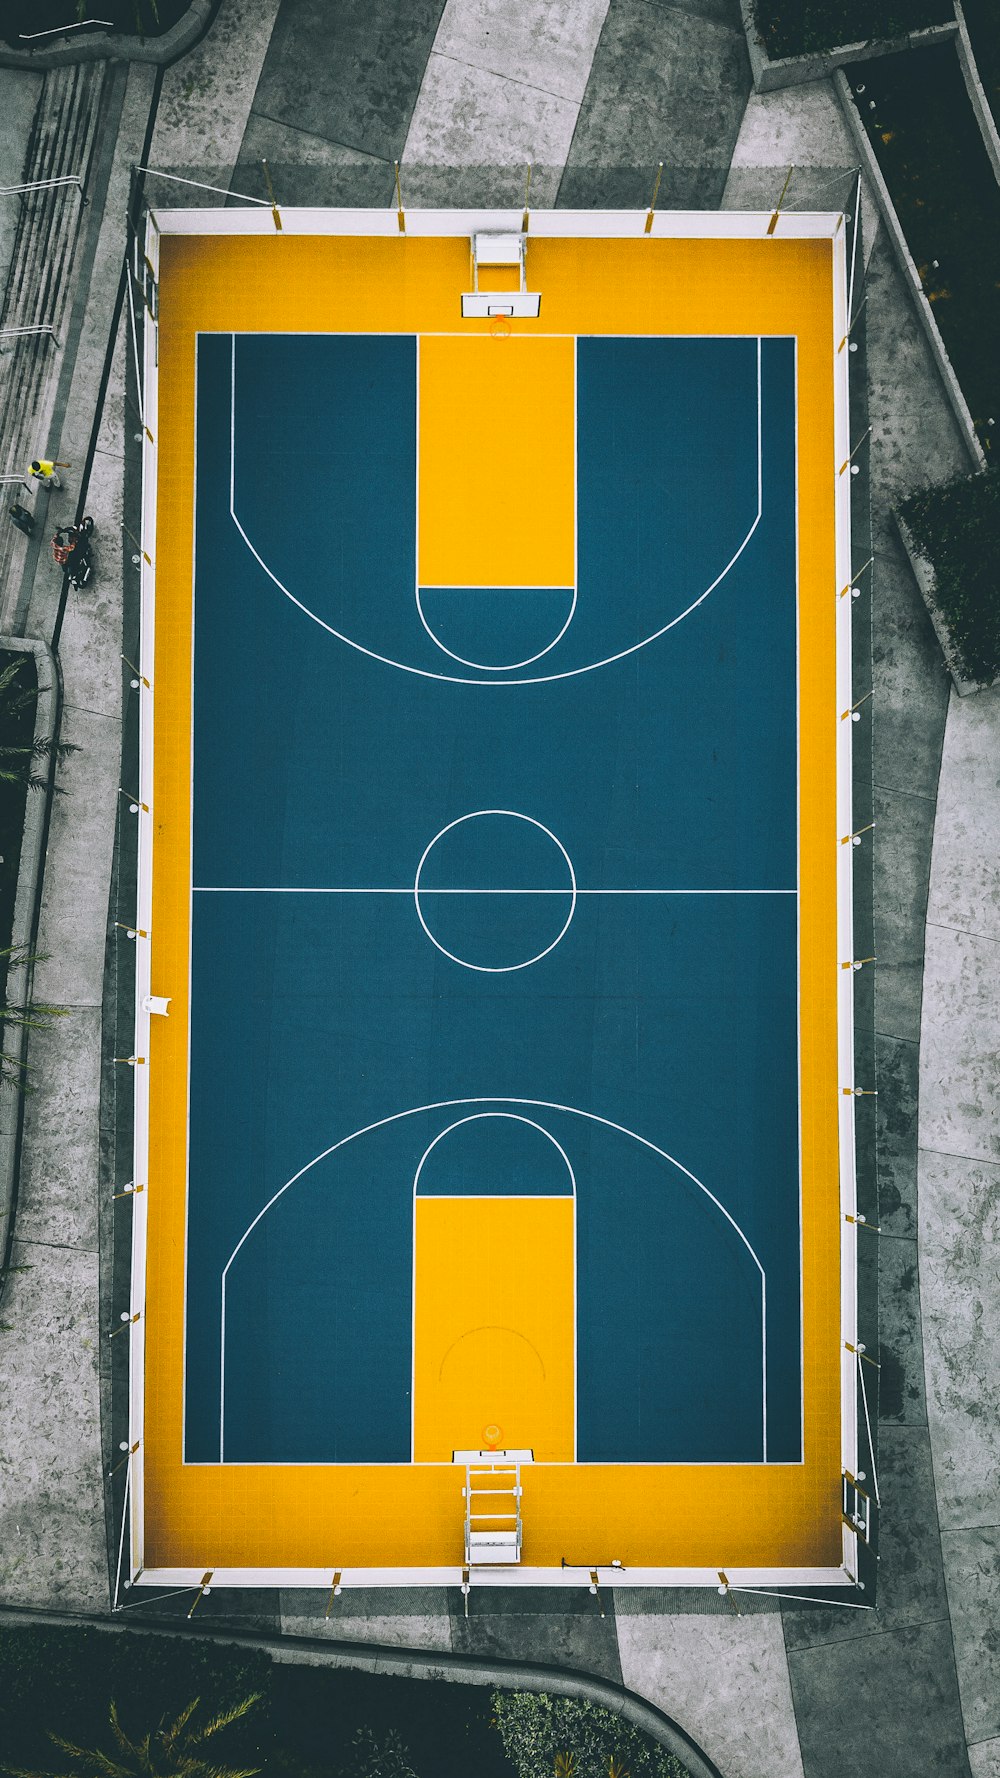 Fotografia aerea del campo da basket giallo e blu